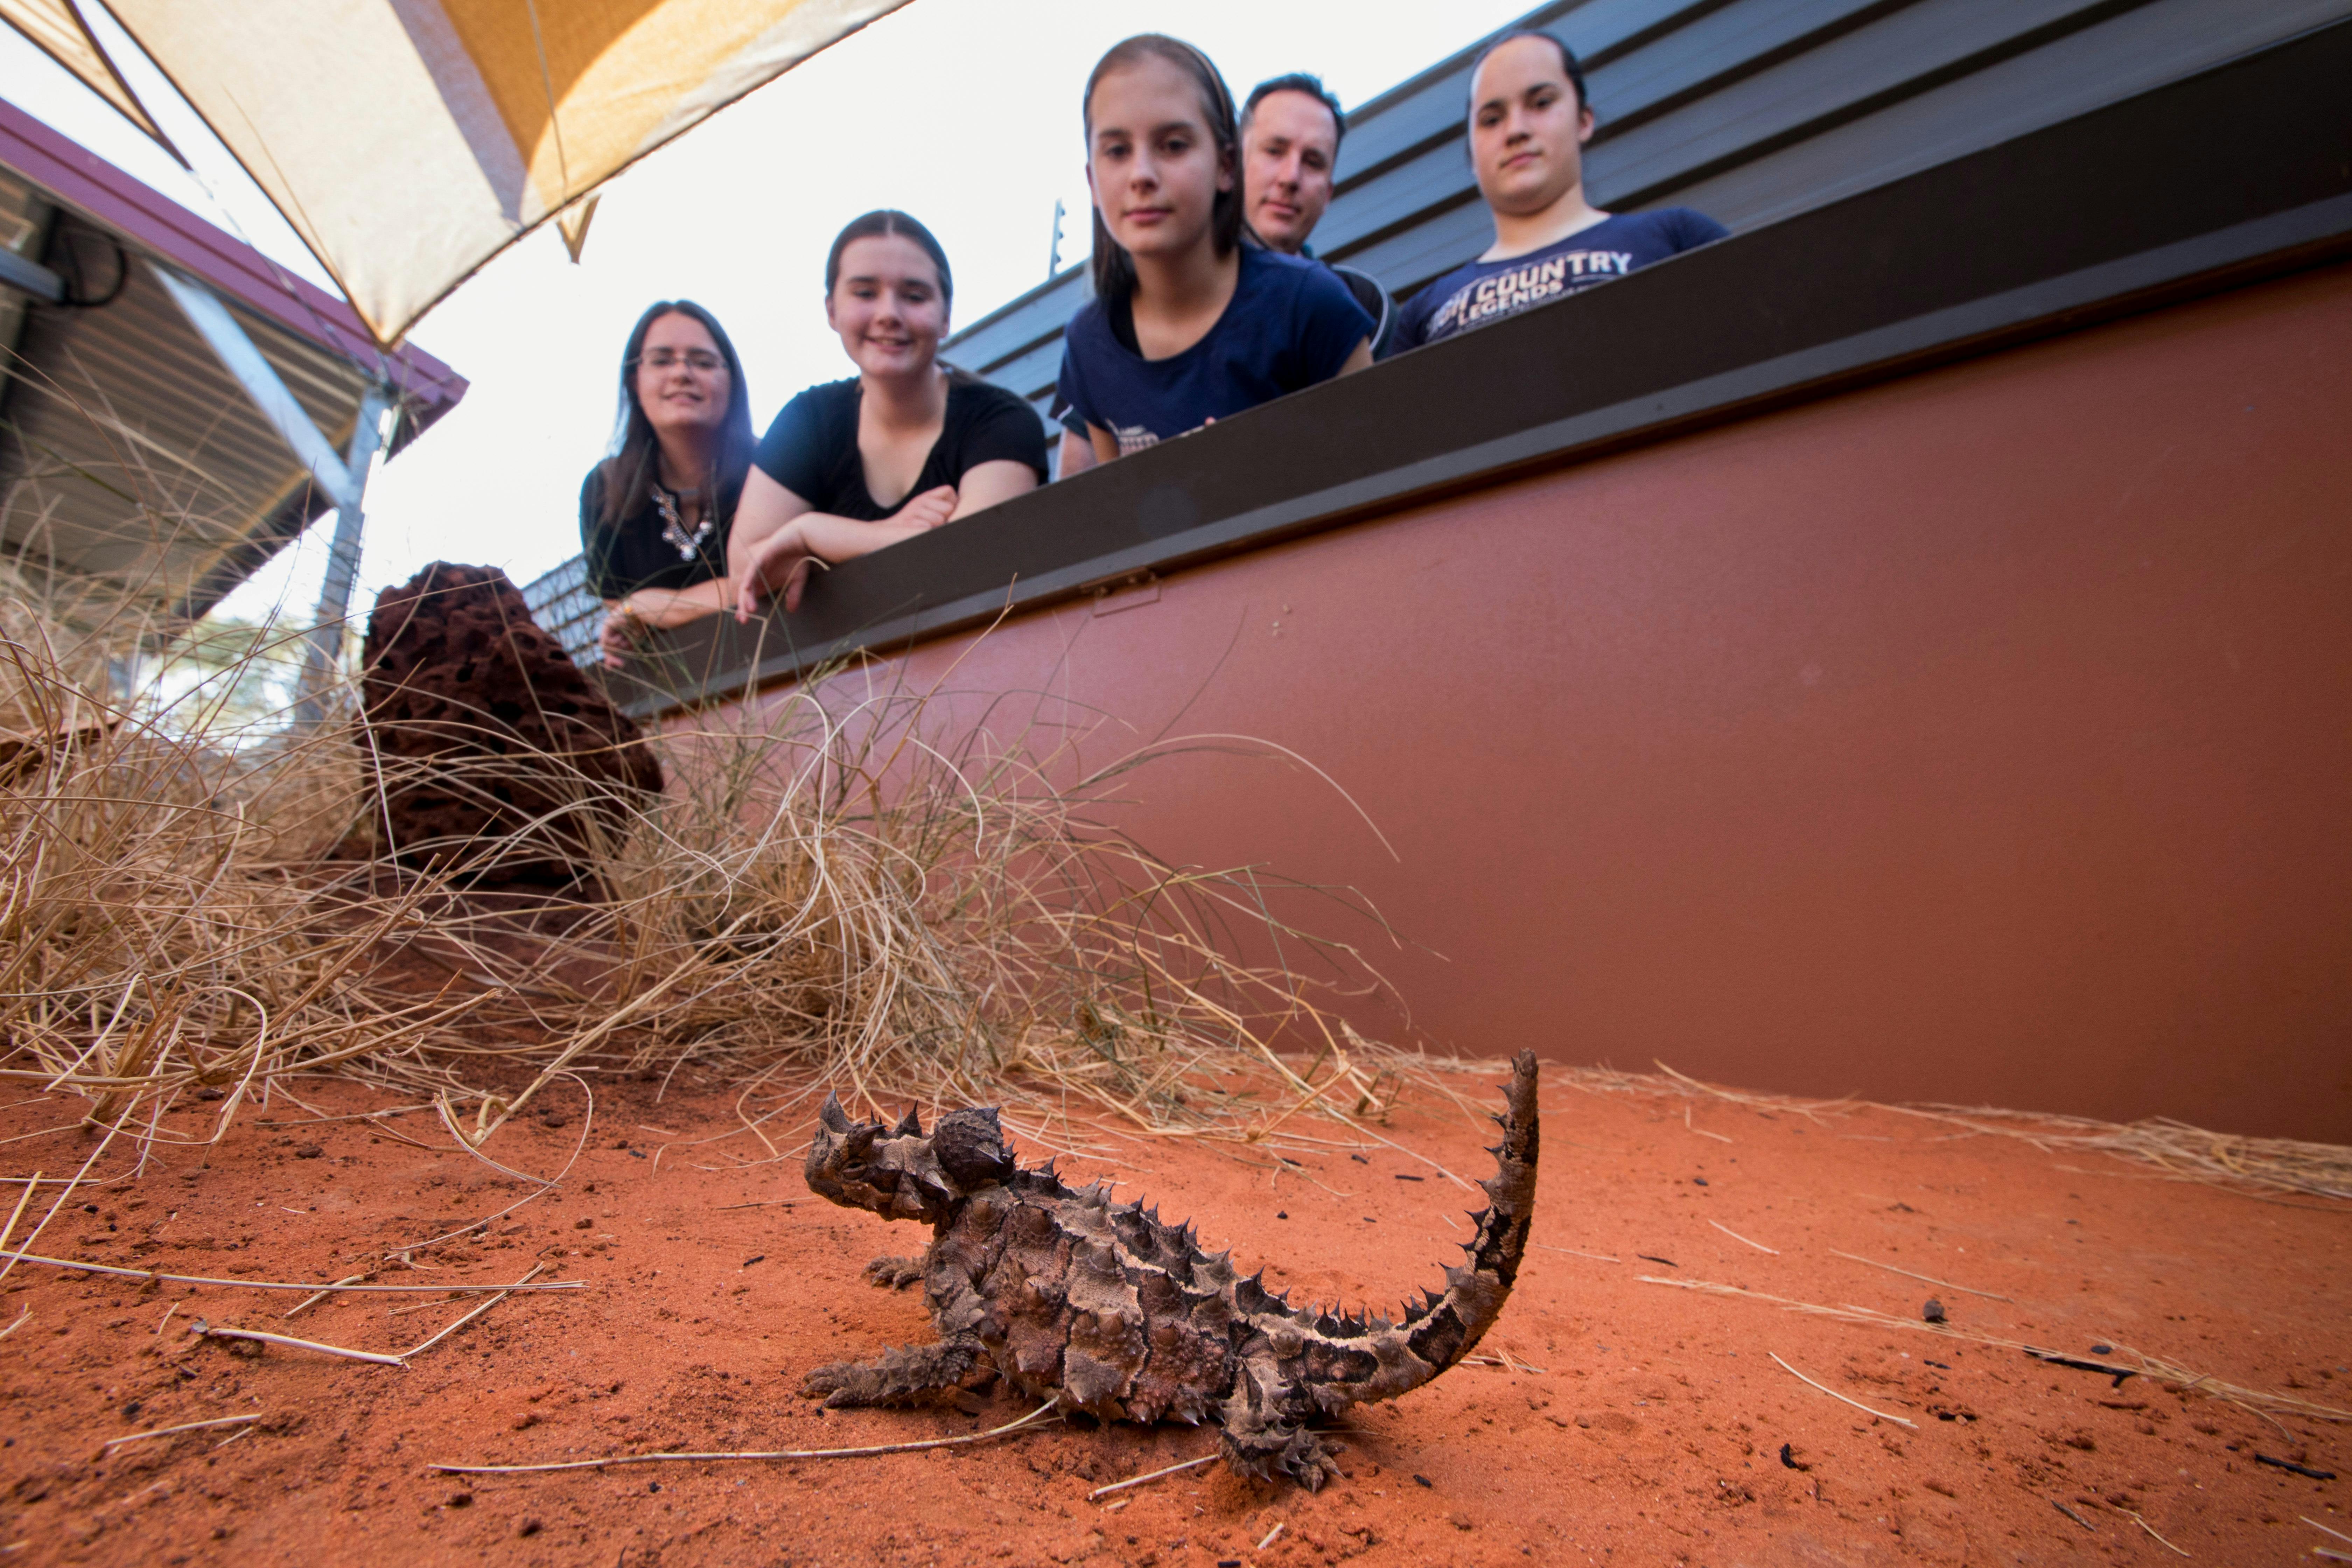 Alice Springs Reptile Centre